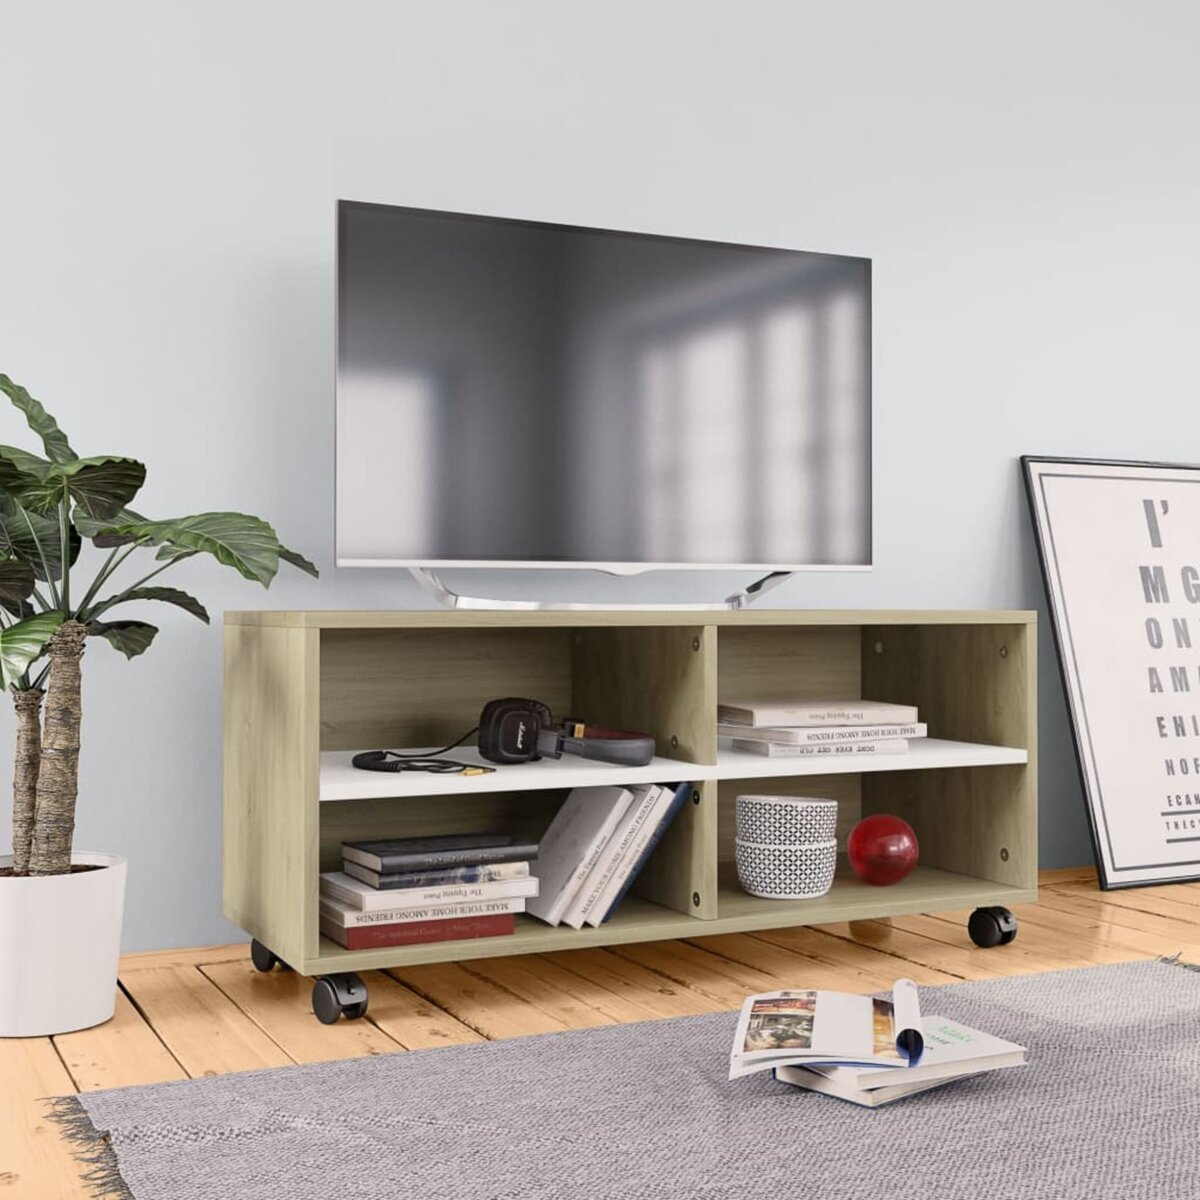 Comment créer un meuble TV avec des roulettes ?